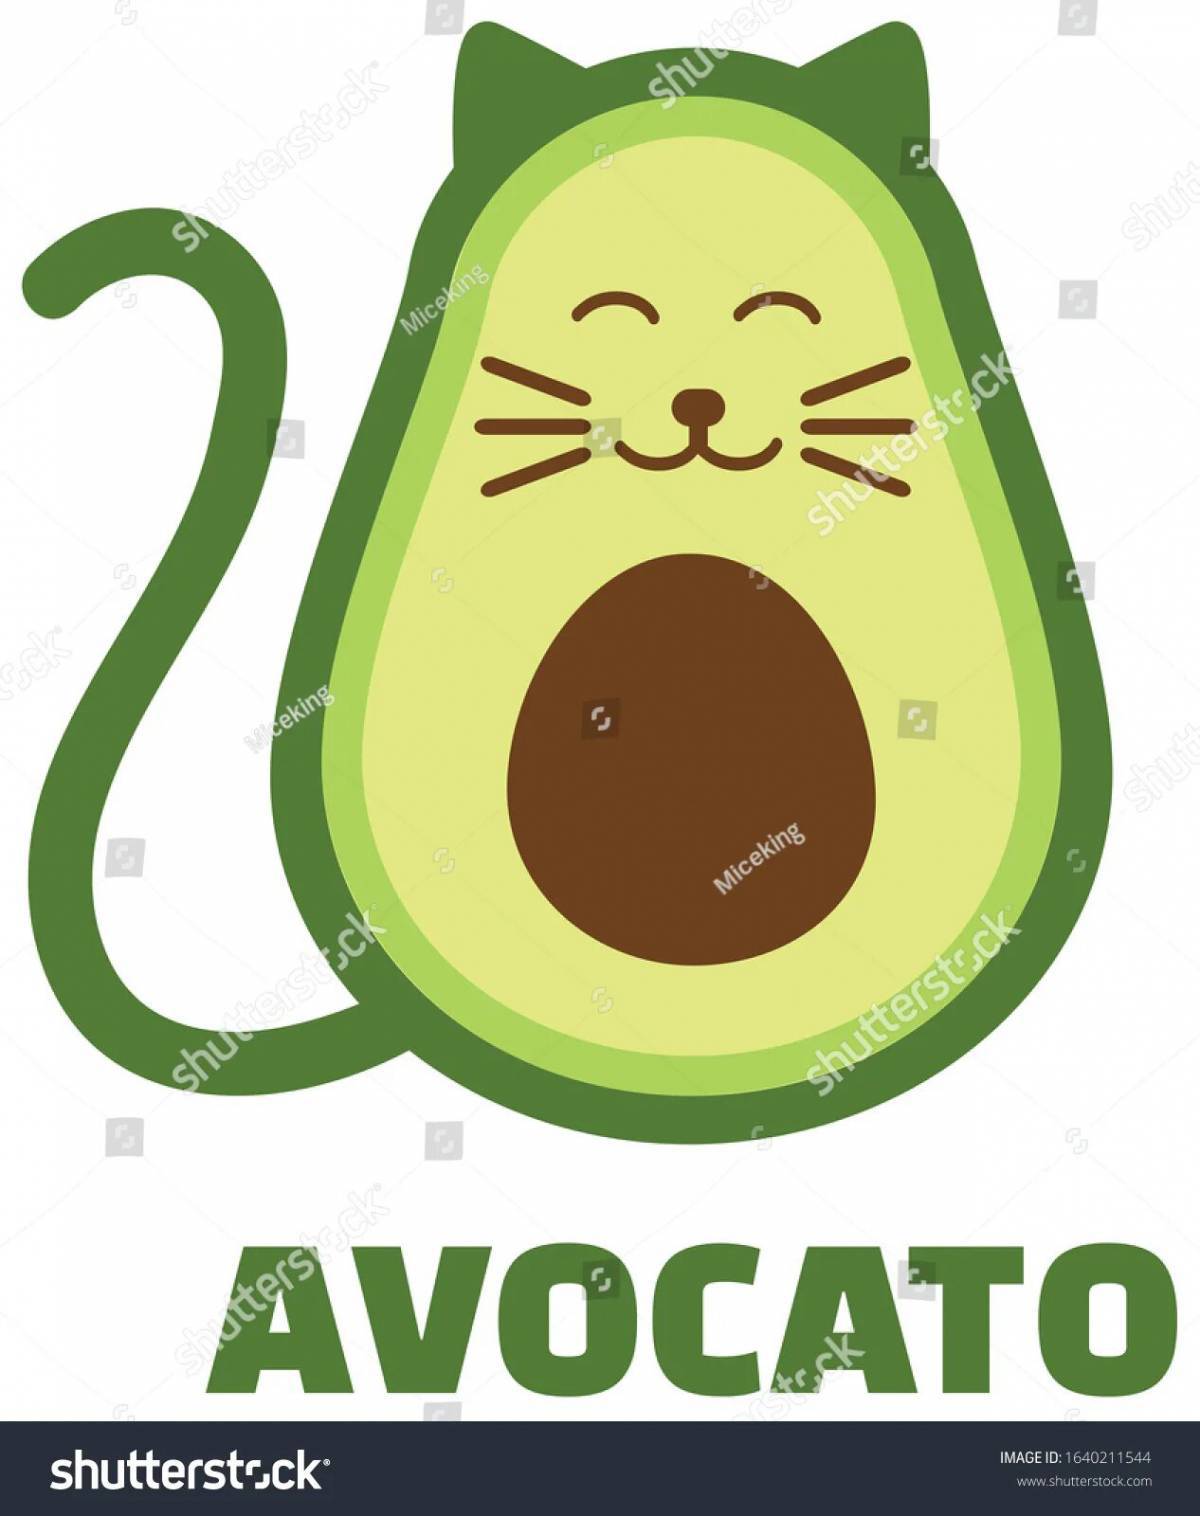 Котик авокадо #11